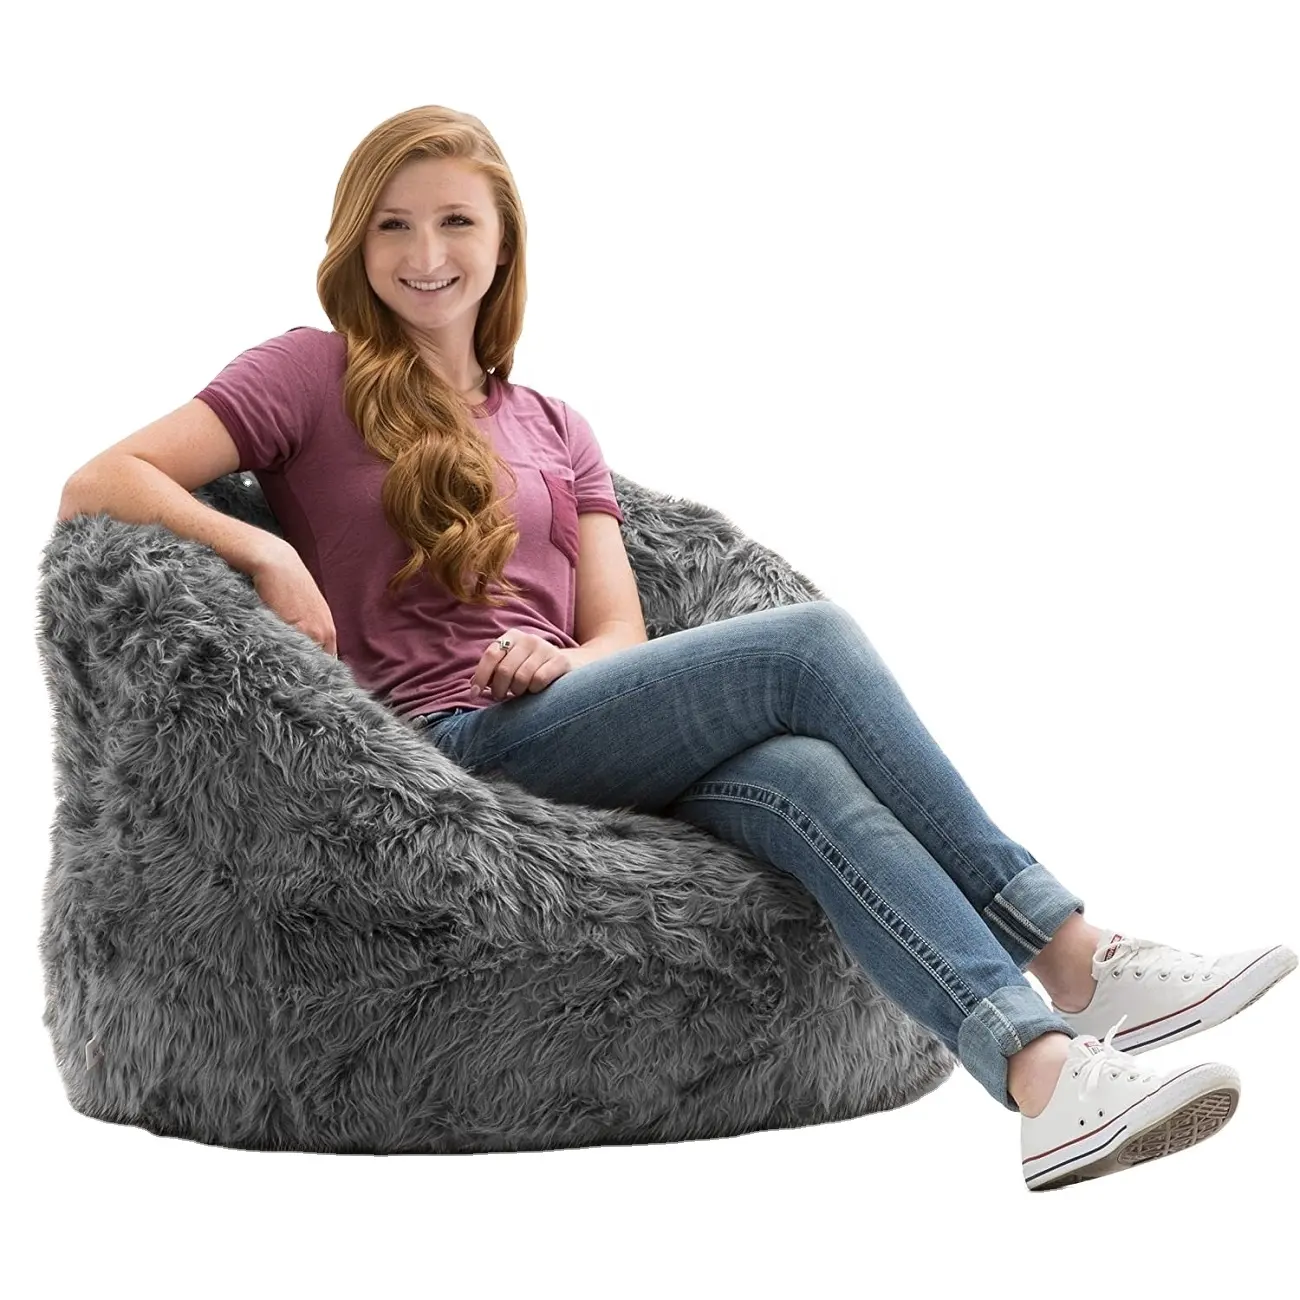 GEEKSOFA Vendendo Hot Modern Design Confortável Sofá Preguiçoso Cadeira do Saco de Feijão Gigante Crianças E Adultos Para Jogar Quarto